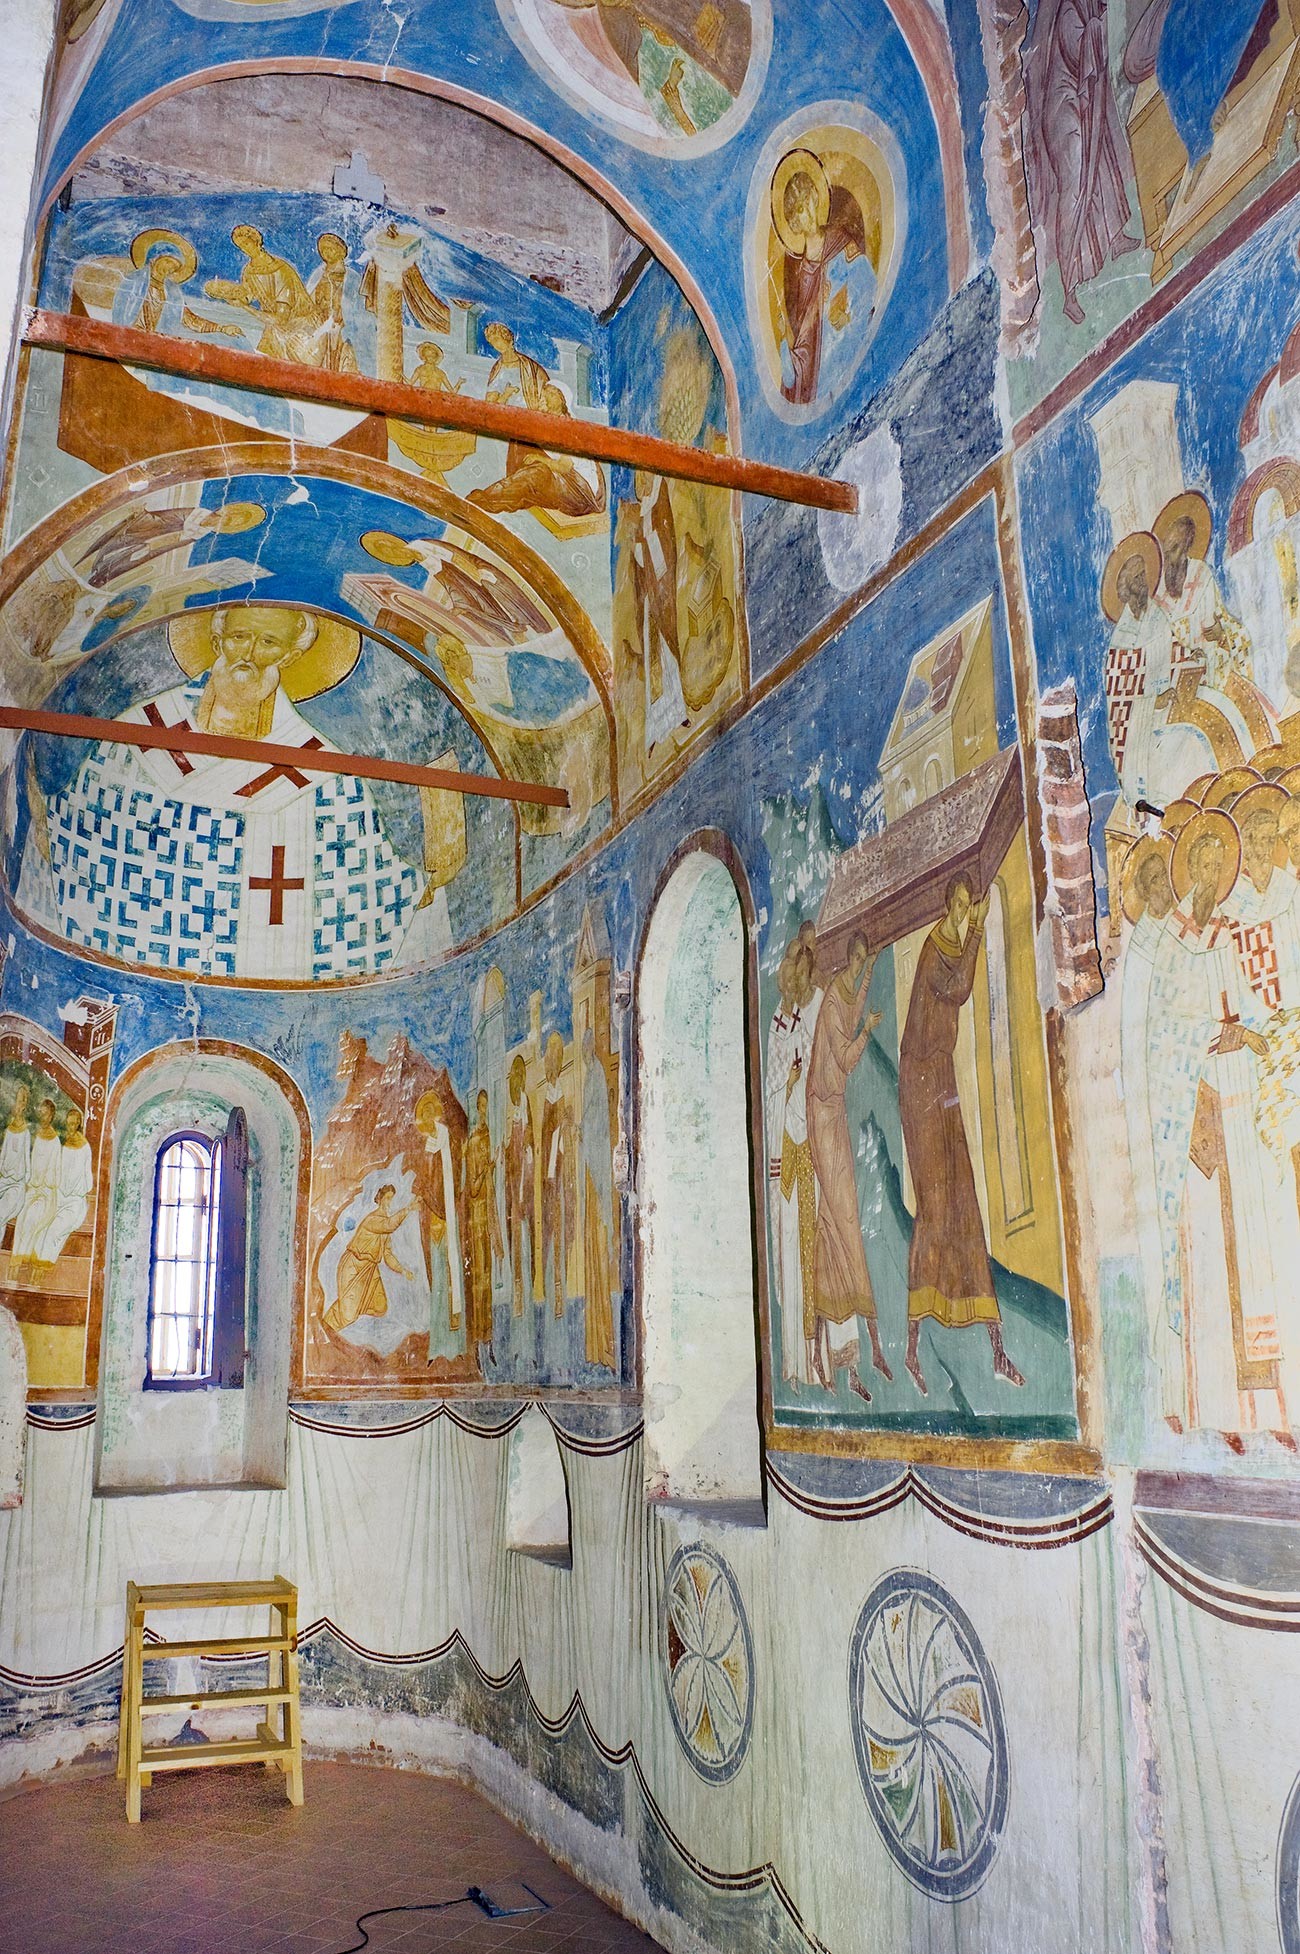 Cathédrale de la Nativité. Abside sud avec fresques de Saint-Nicolas